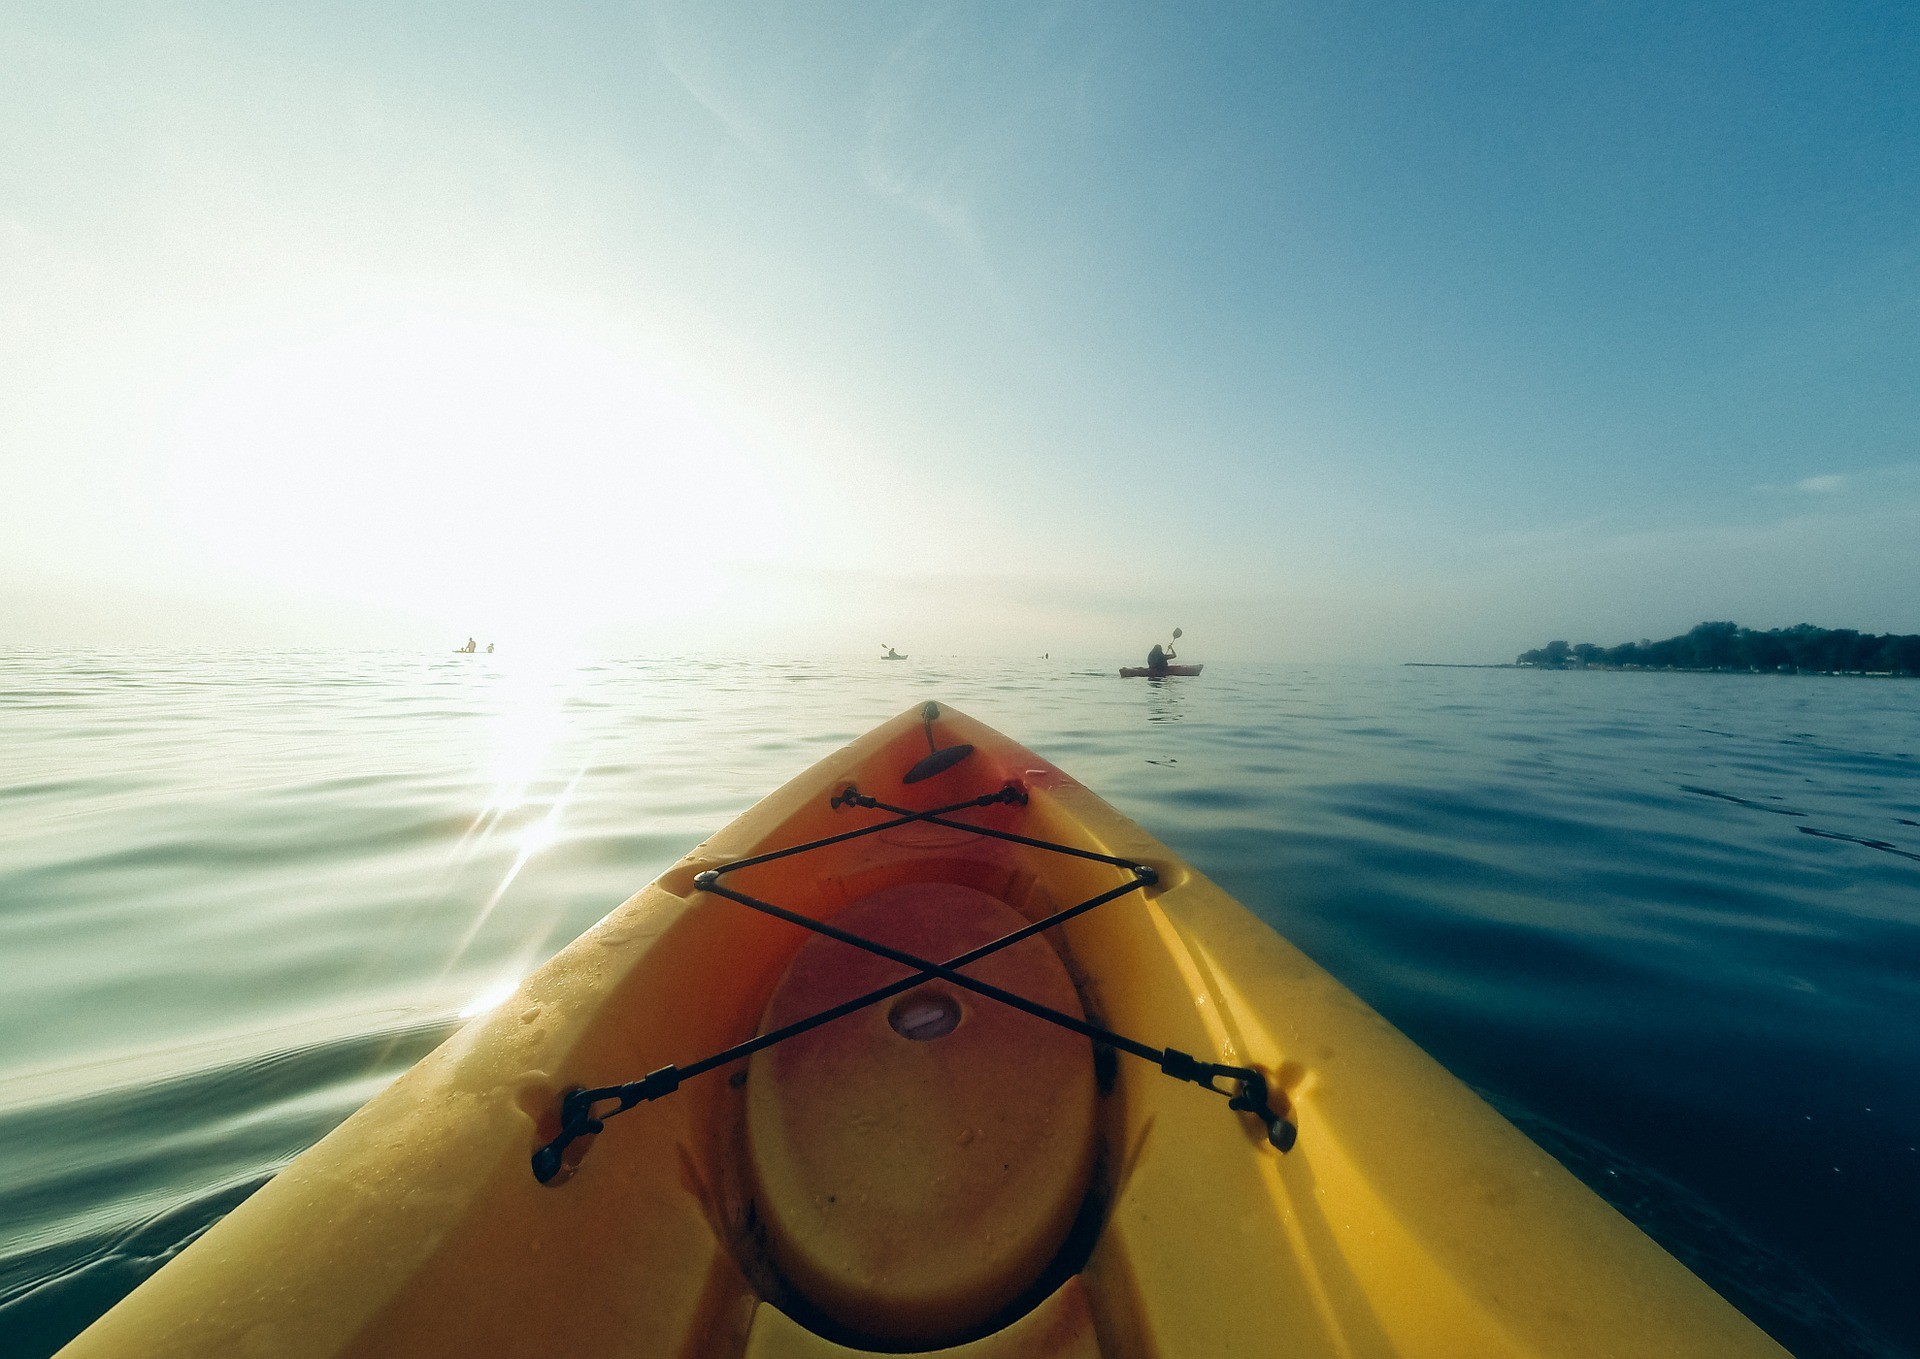     Un kayakiste disparu en mer à Vieux-Habitants 

